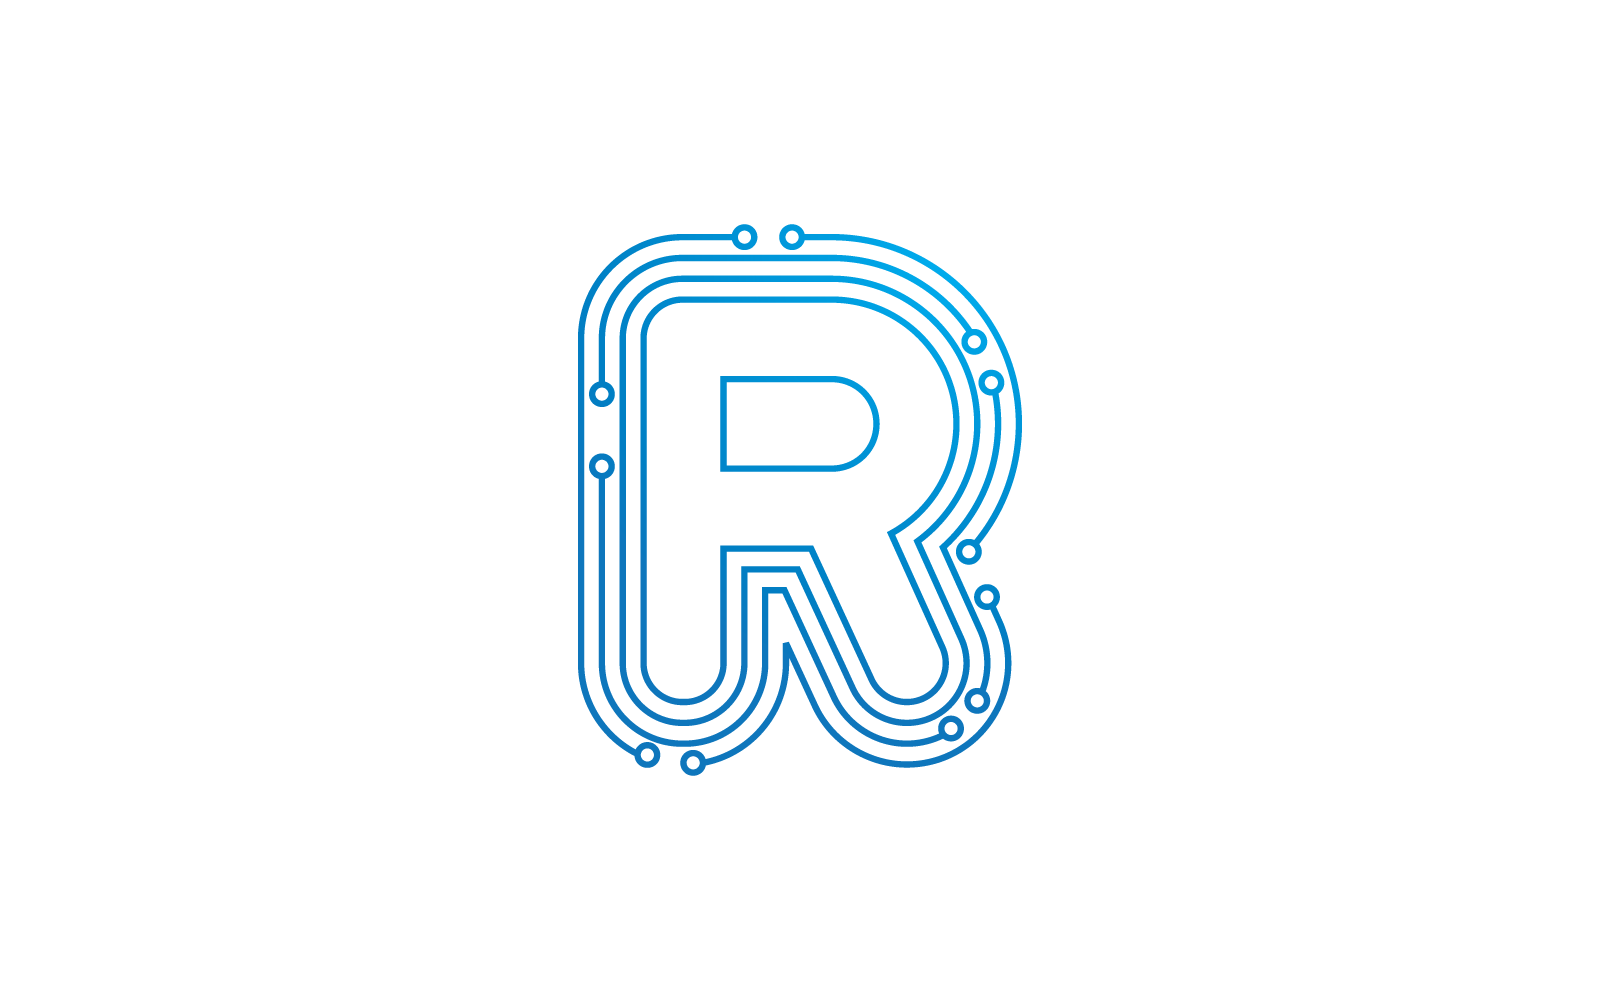 R 首字母电路技术插图徽标矢量模板